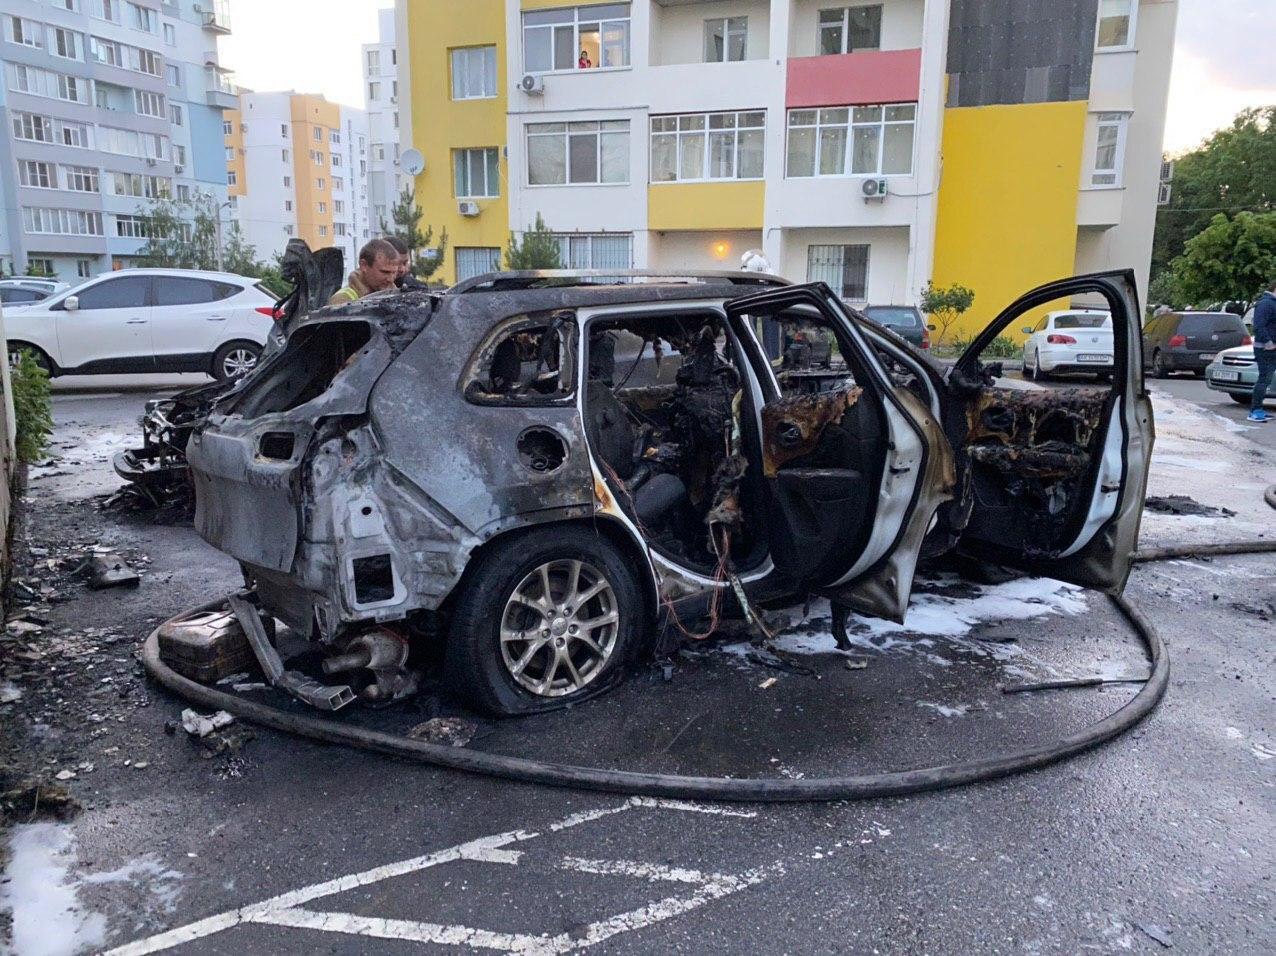 "Неудачная" грудь, выкидыш, месть: вокруг сожжения авто блогерши в Харькове разыгрался скандал